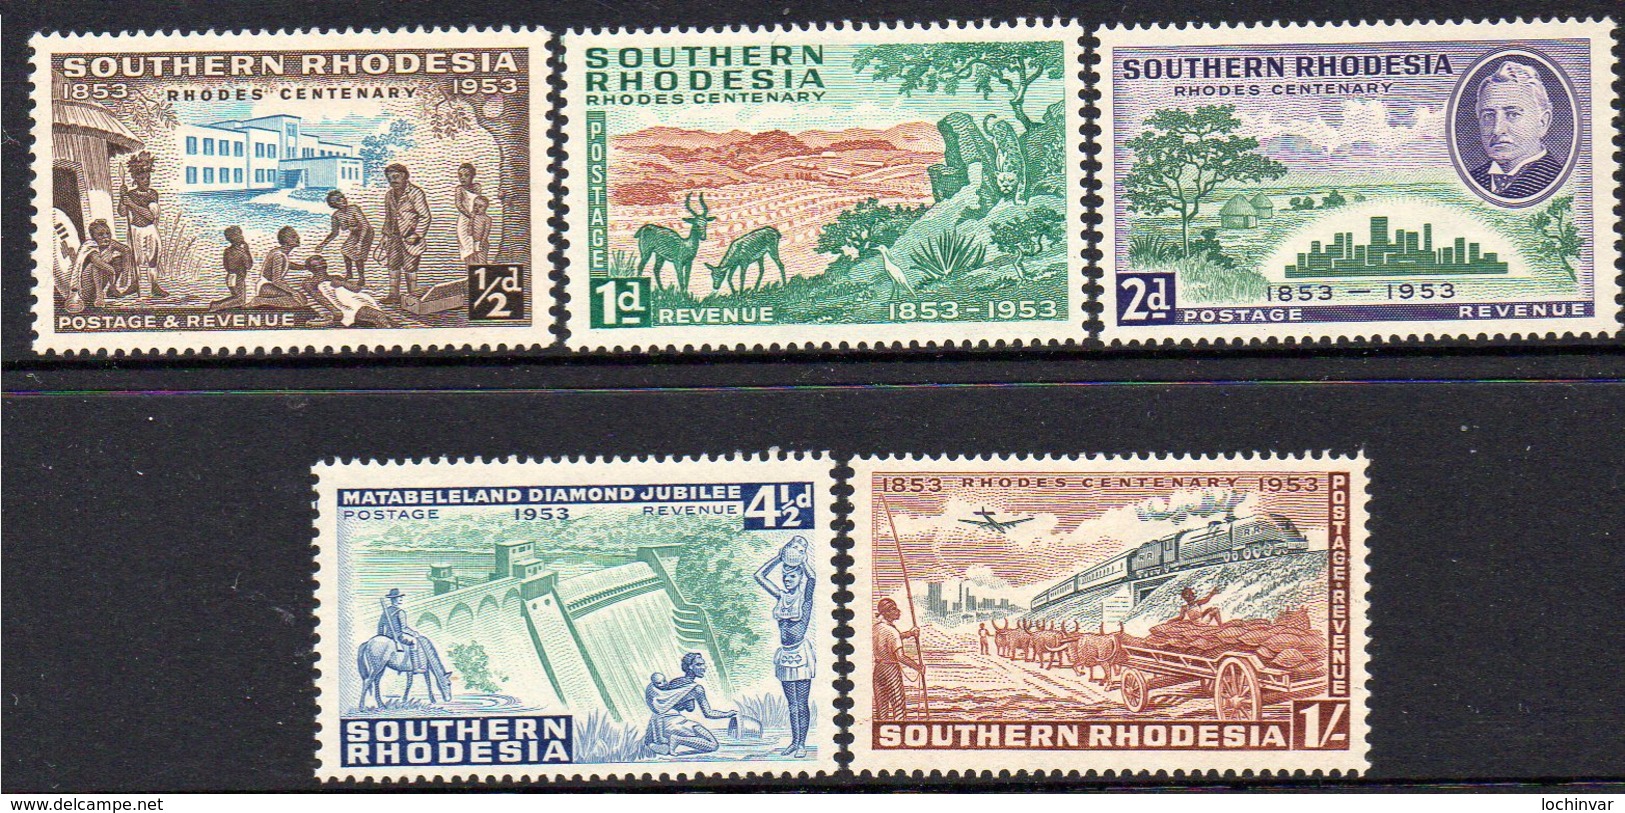 SOUTHERN RHODESIA, 1953 RHODES CENTENARY 5 MH - Autres - Afrique